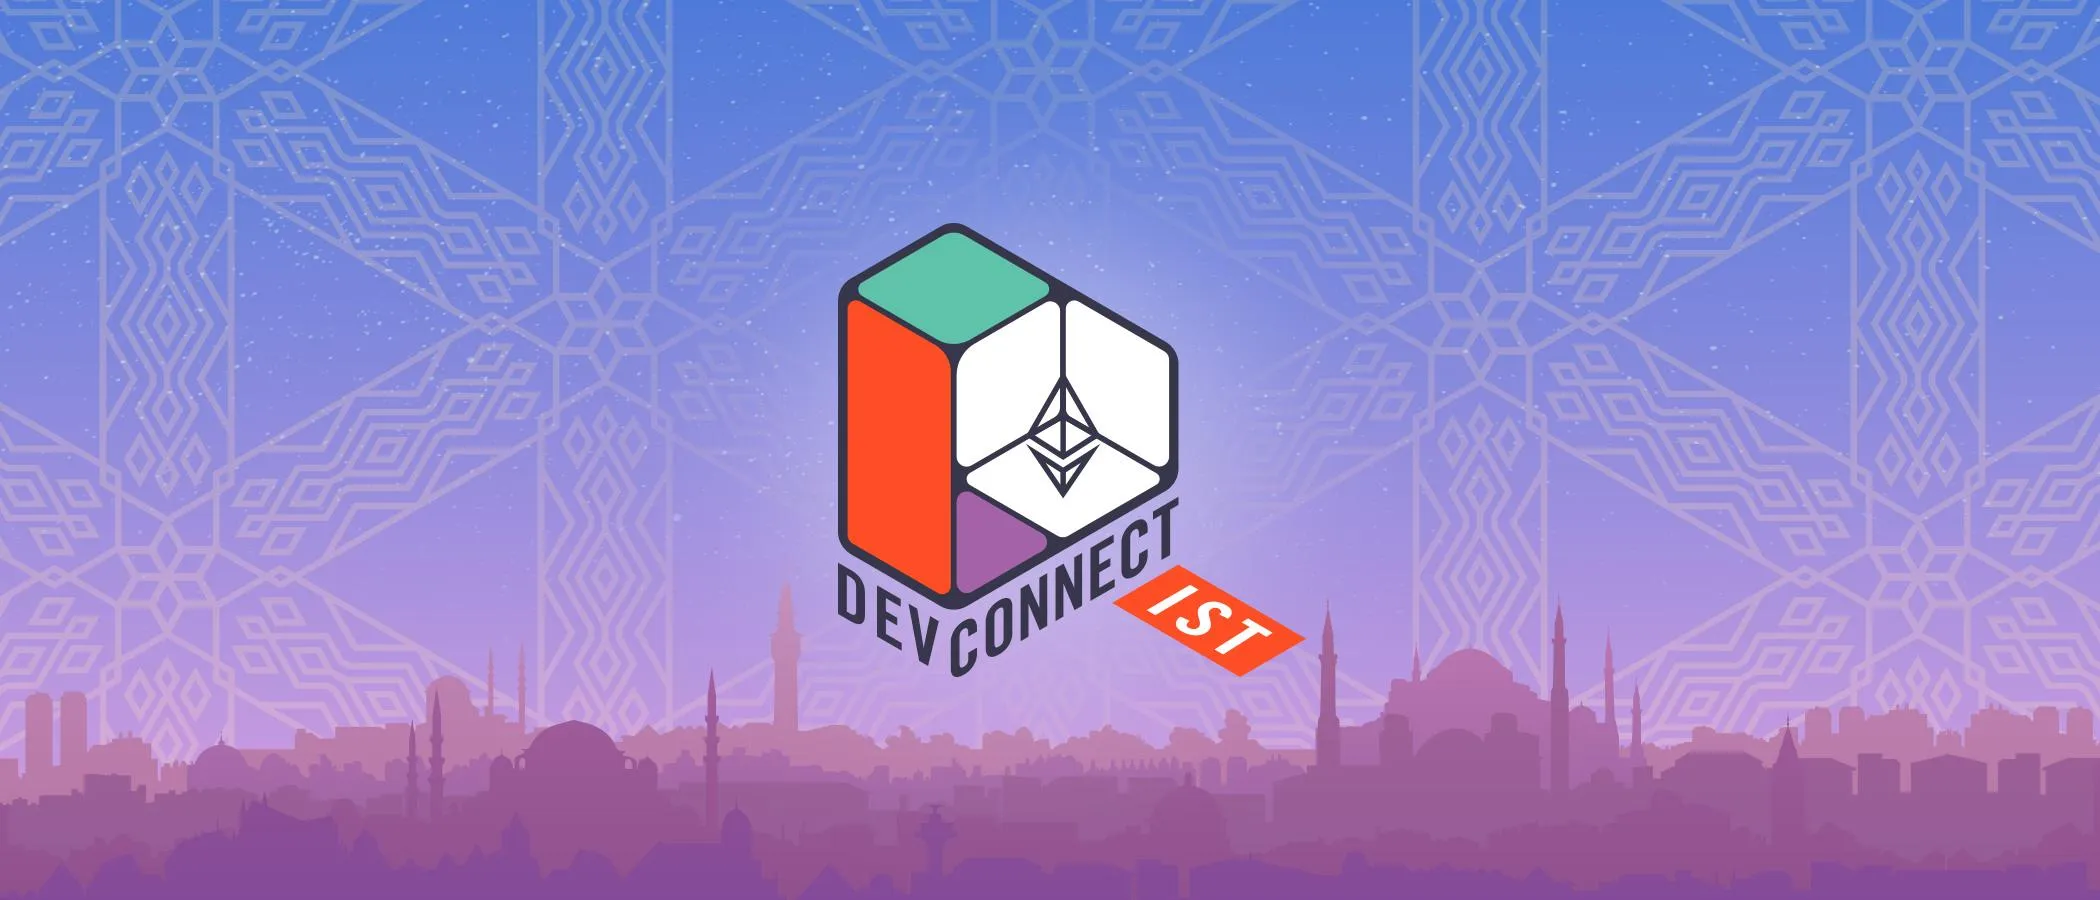 参会指南：以太坊 Devconnect 大会开幕倒计时，一览周边活动日程（持续更新）